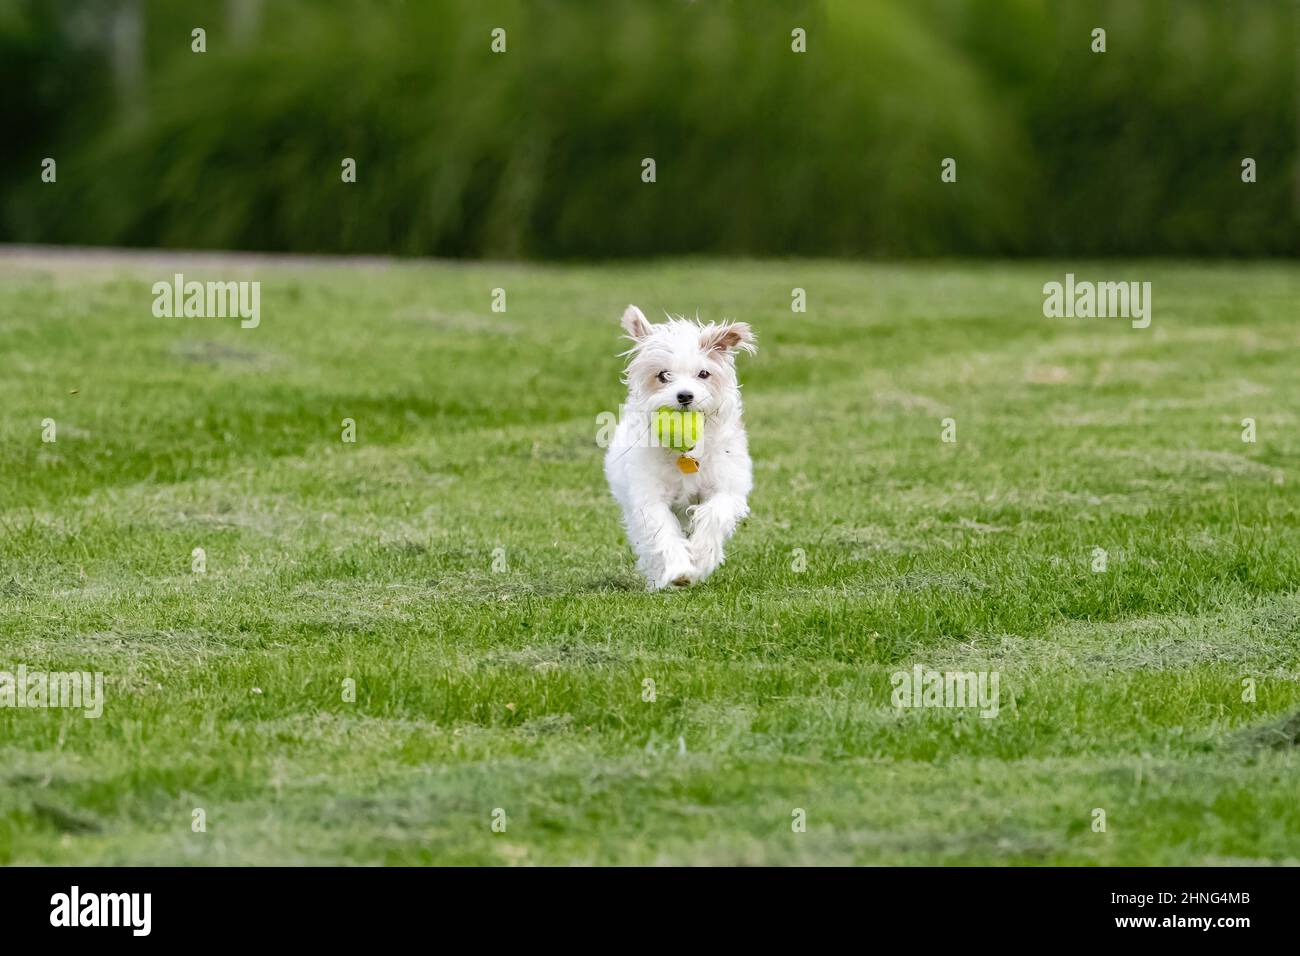 Ein White Terrier aus dem West Highland, der mit einem Ball im Mund auf den Betrachter zuläuft, durch einen grünen, grasbewachsenen Rasen. Stockfoto